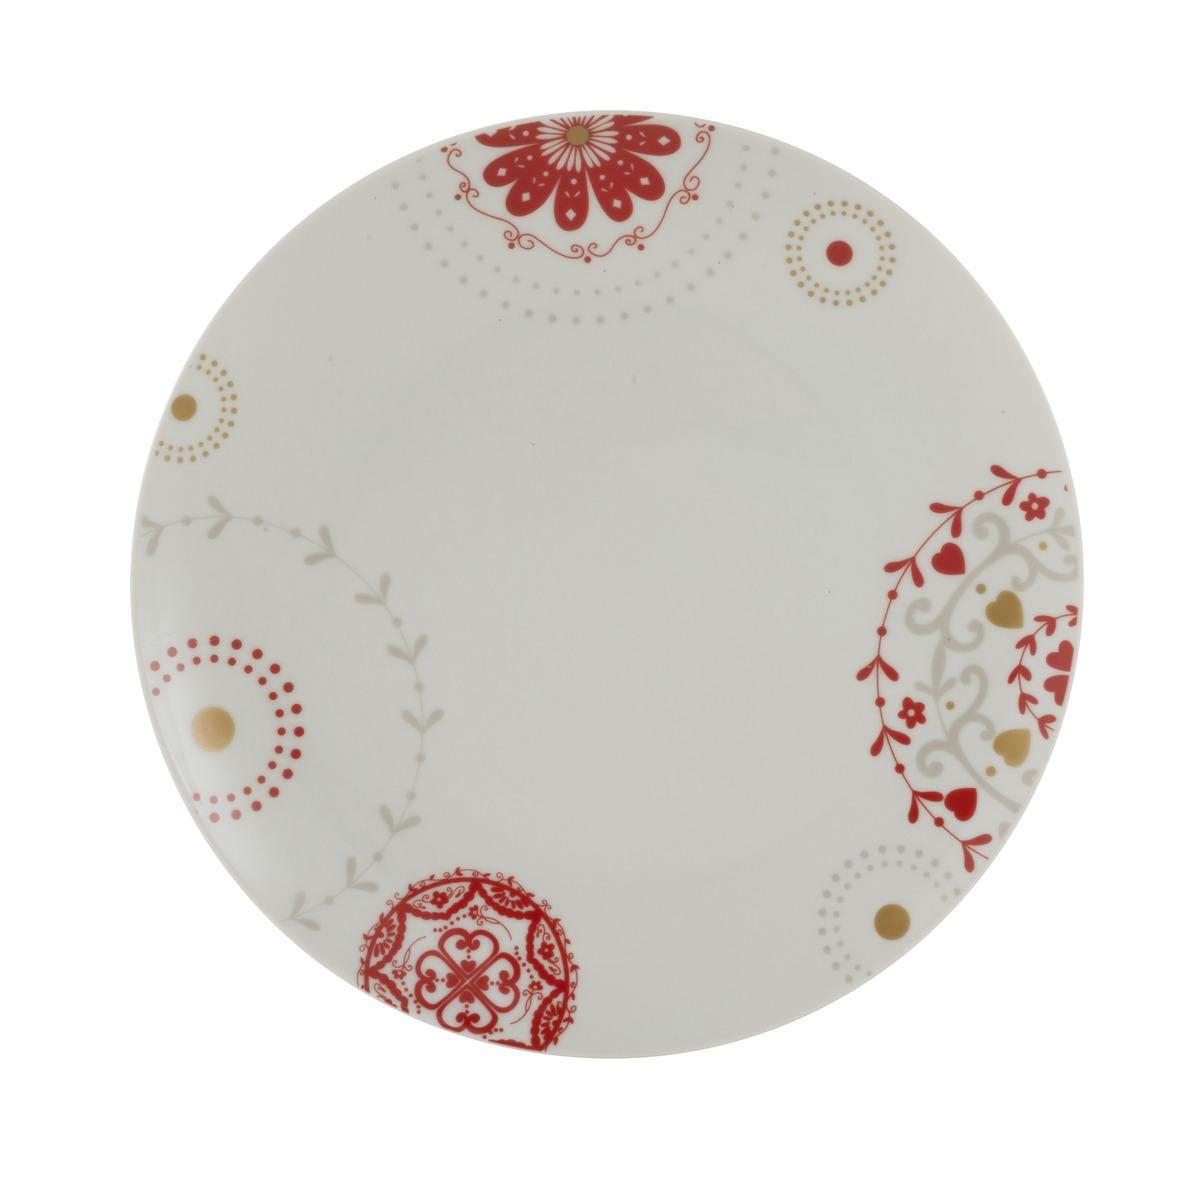 Assiette plate motif floral - Diamètre 27 cm - Blanc, Rouge